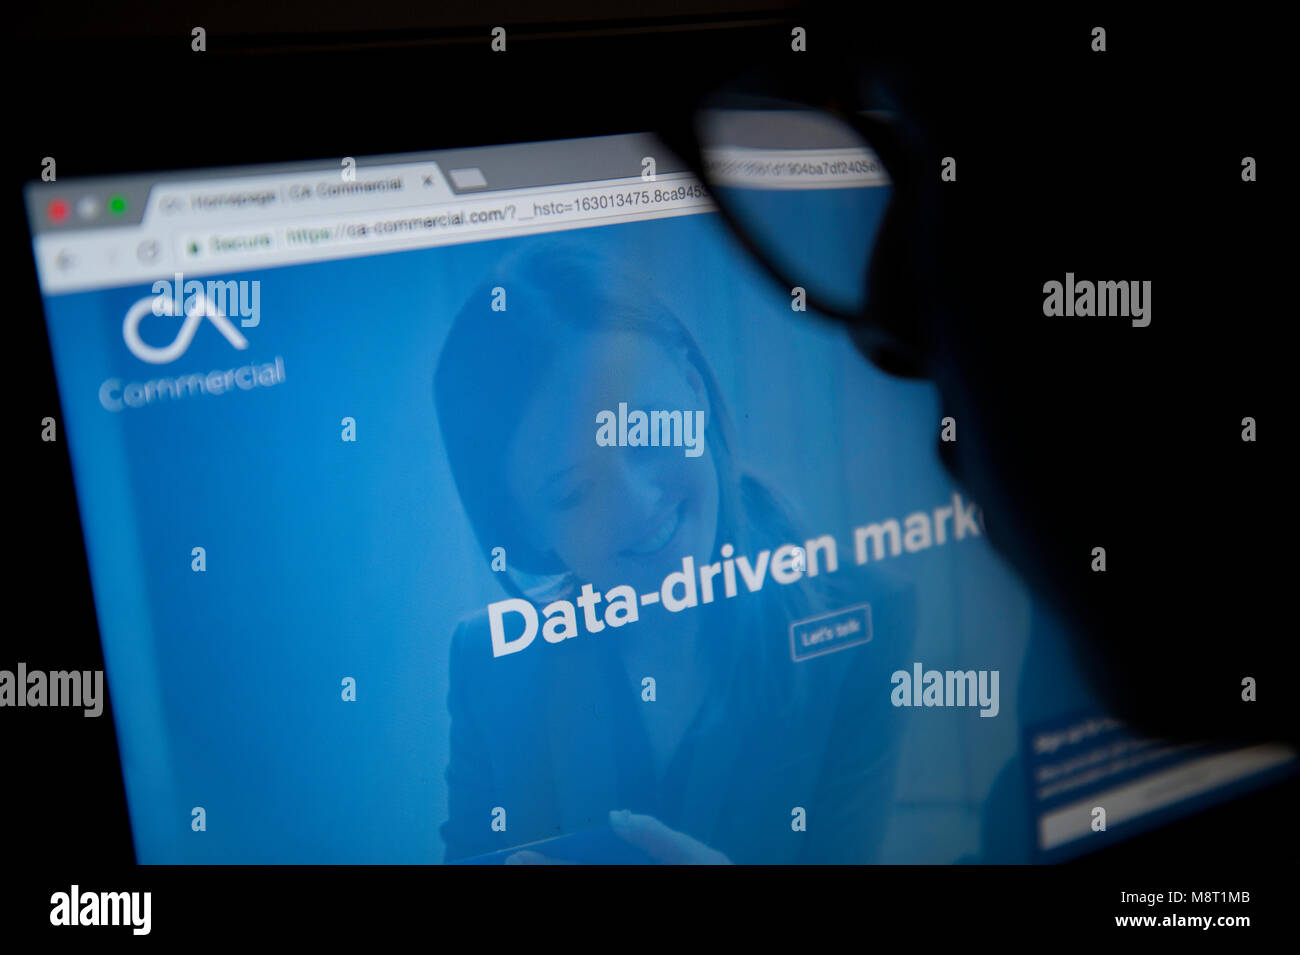 Une personne regarde le site web de l'Analytica Cambridge Banque D'Images